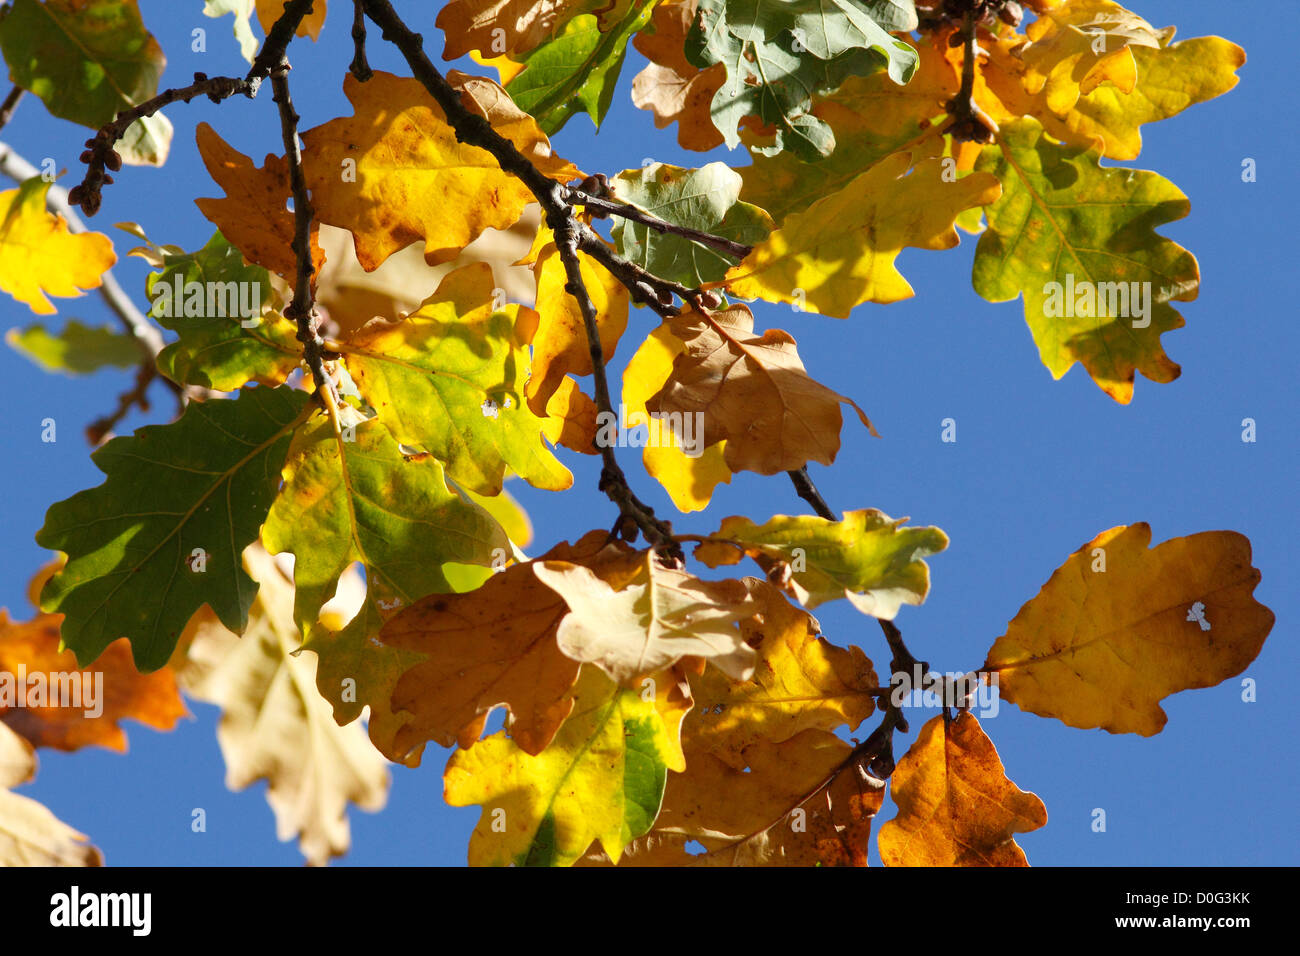 Oak-leaves-turning-in-Autumn-D0G3KK.jpg